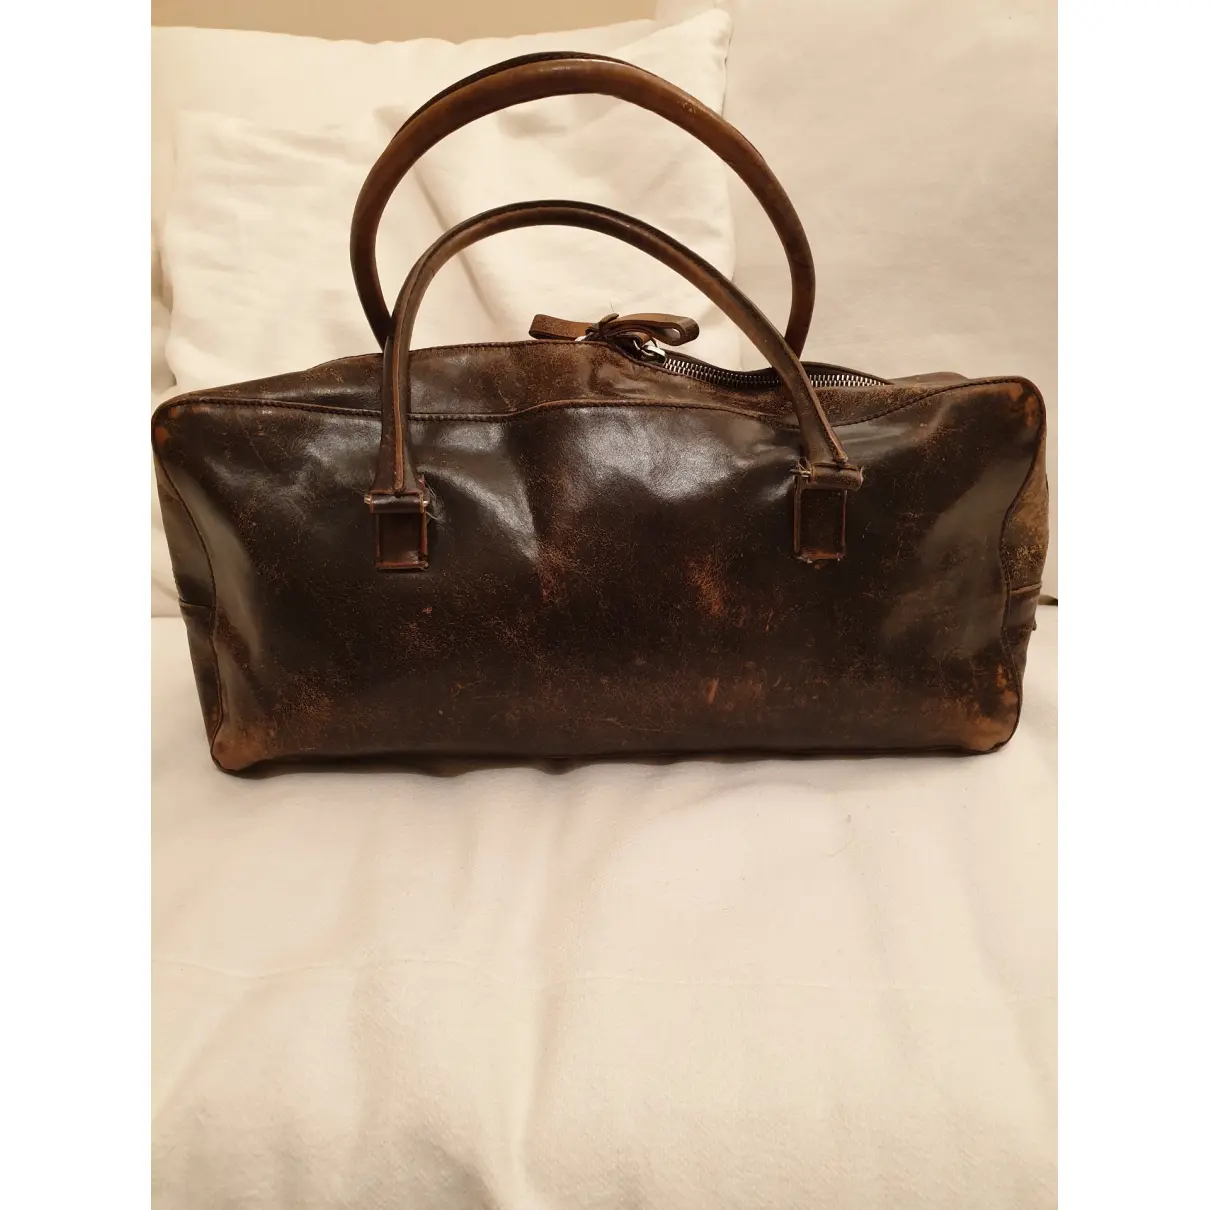 Buy Miu Miu Leather handbag online - Vintage